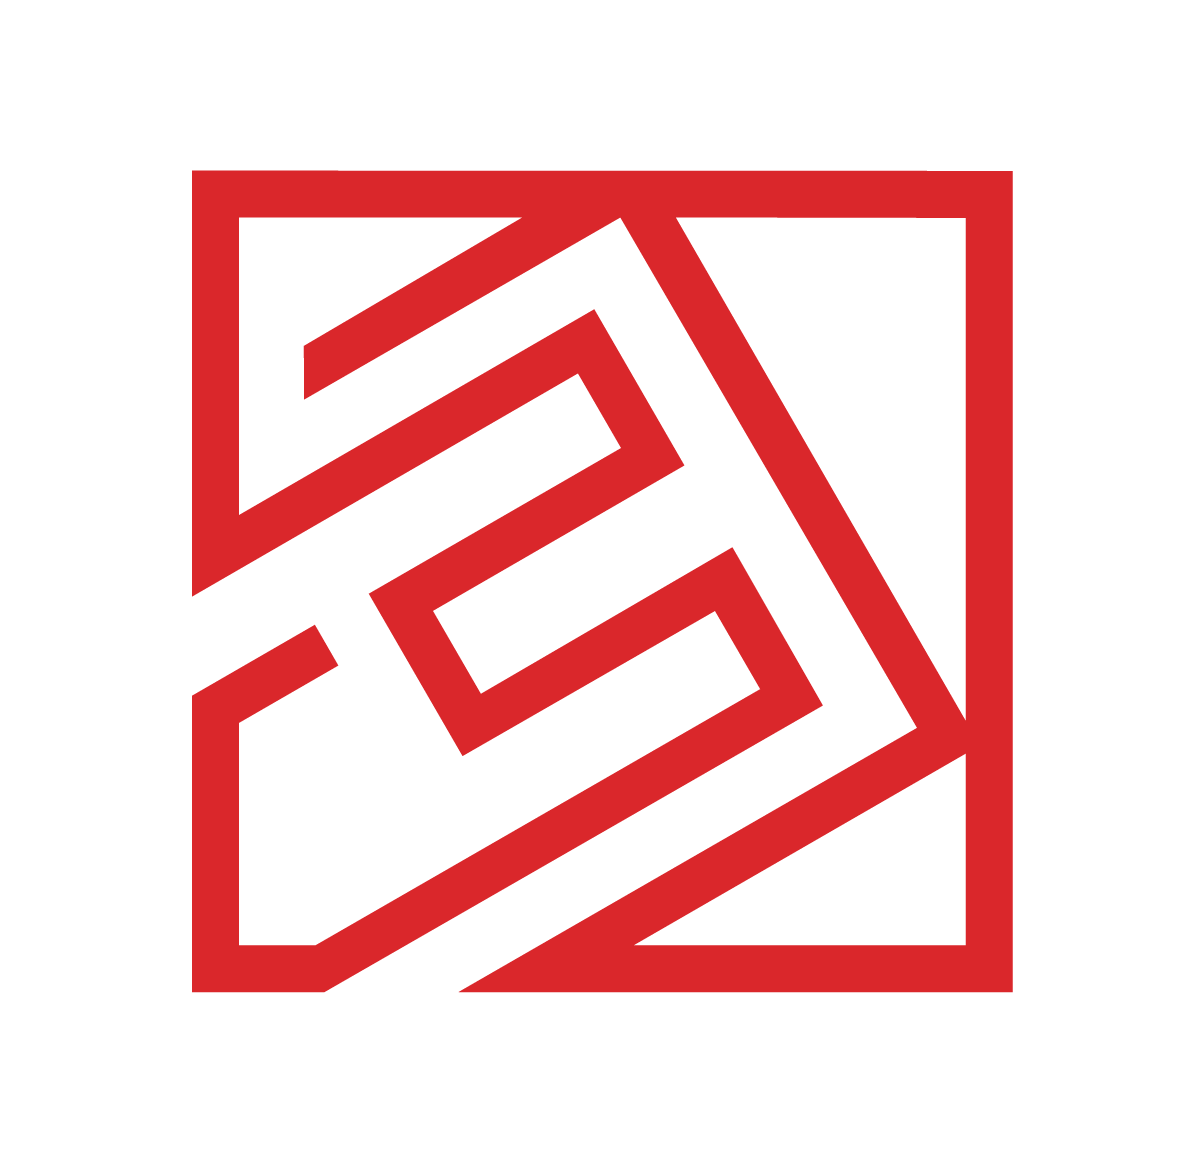 ENIX logo sygnet - O firmie